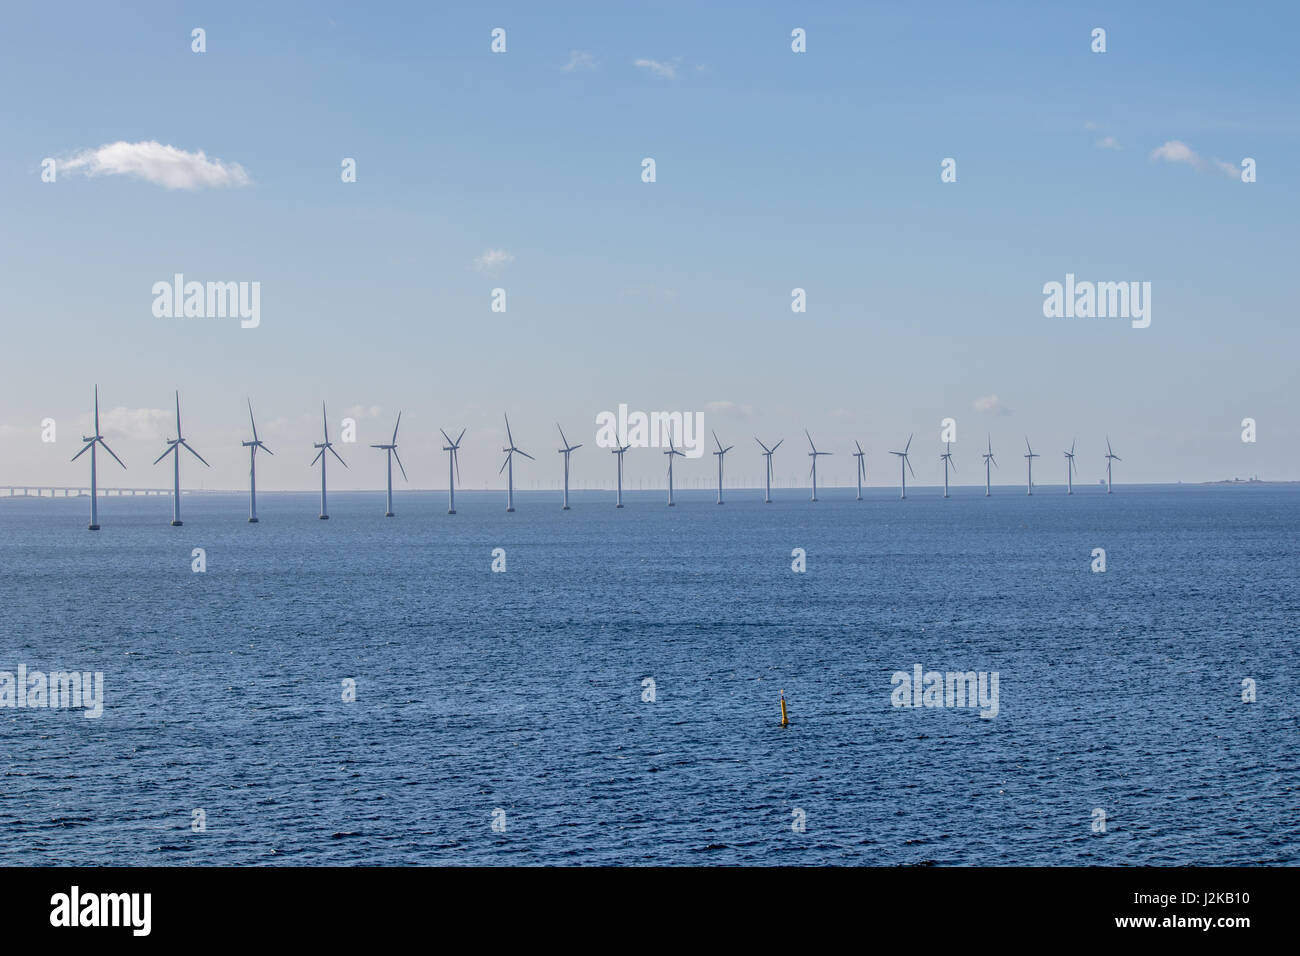 Granja de molinos de viento offshore fuera de Copenhague, capital de Dinamarca. Foto de stock